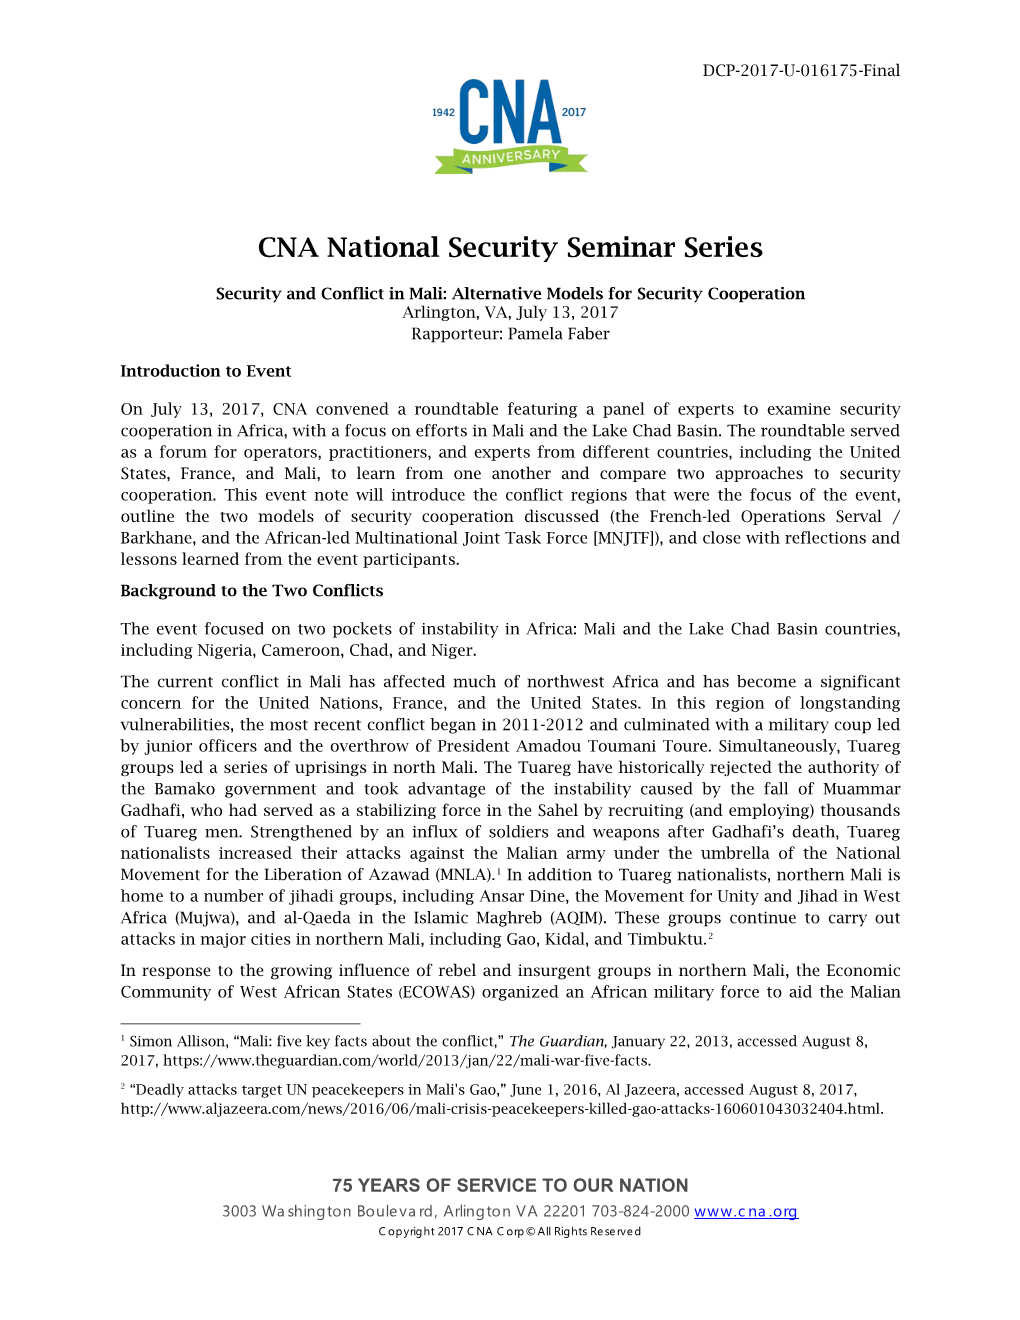 CNA National Security Seminar Series